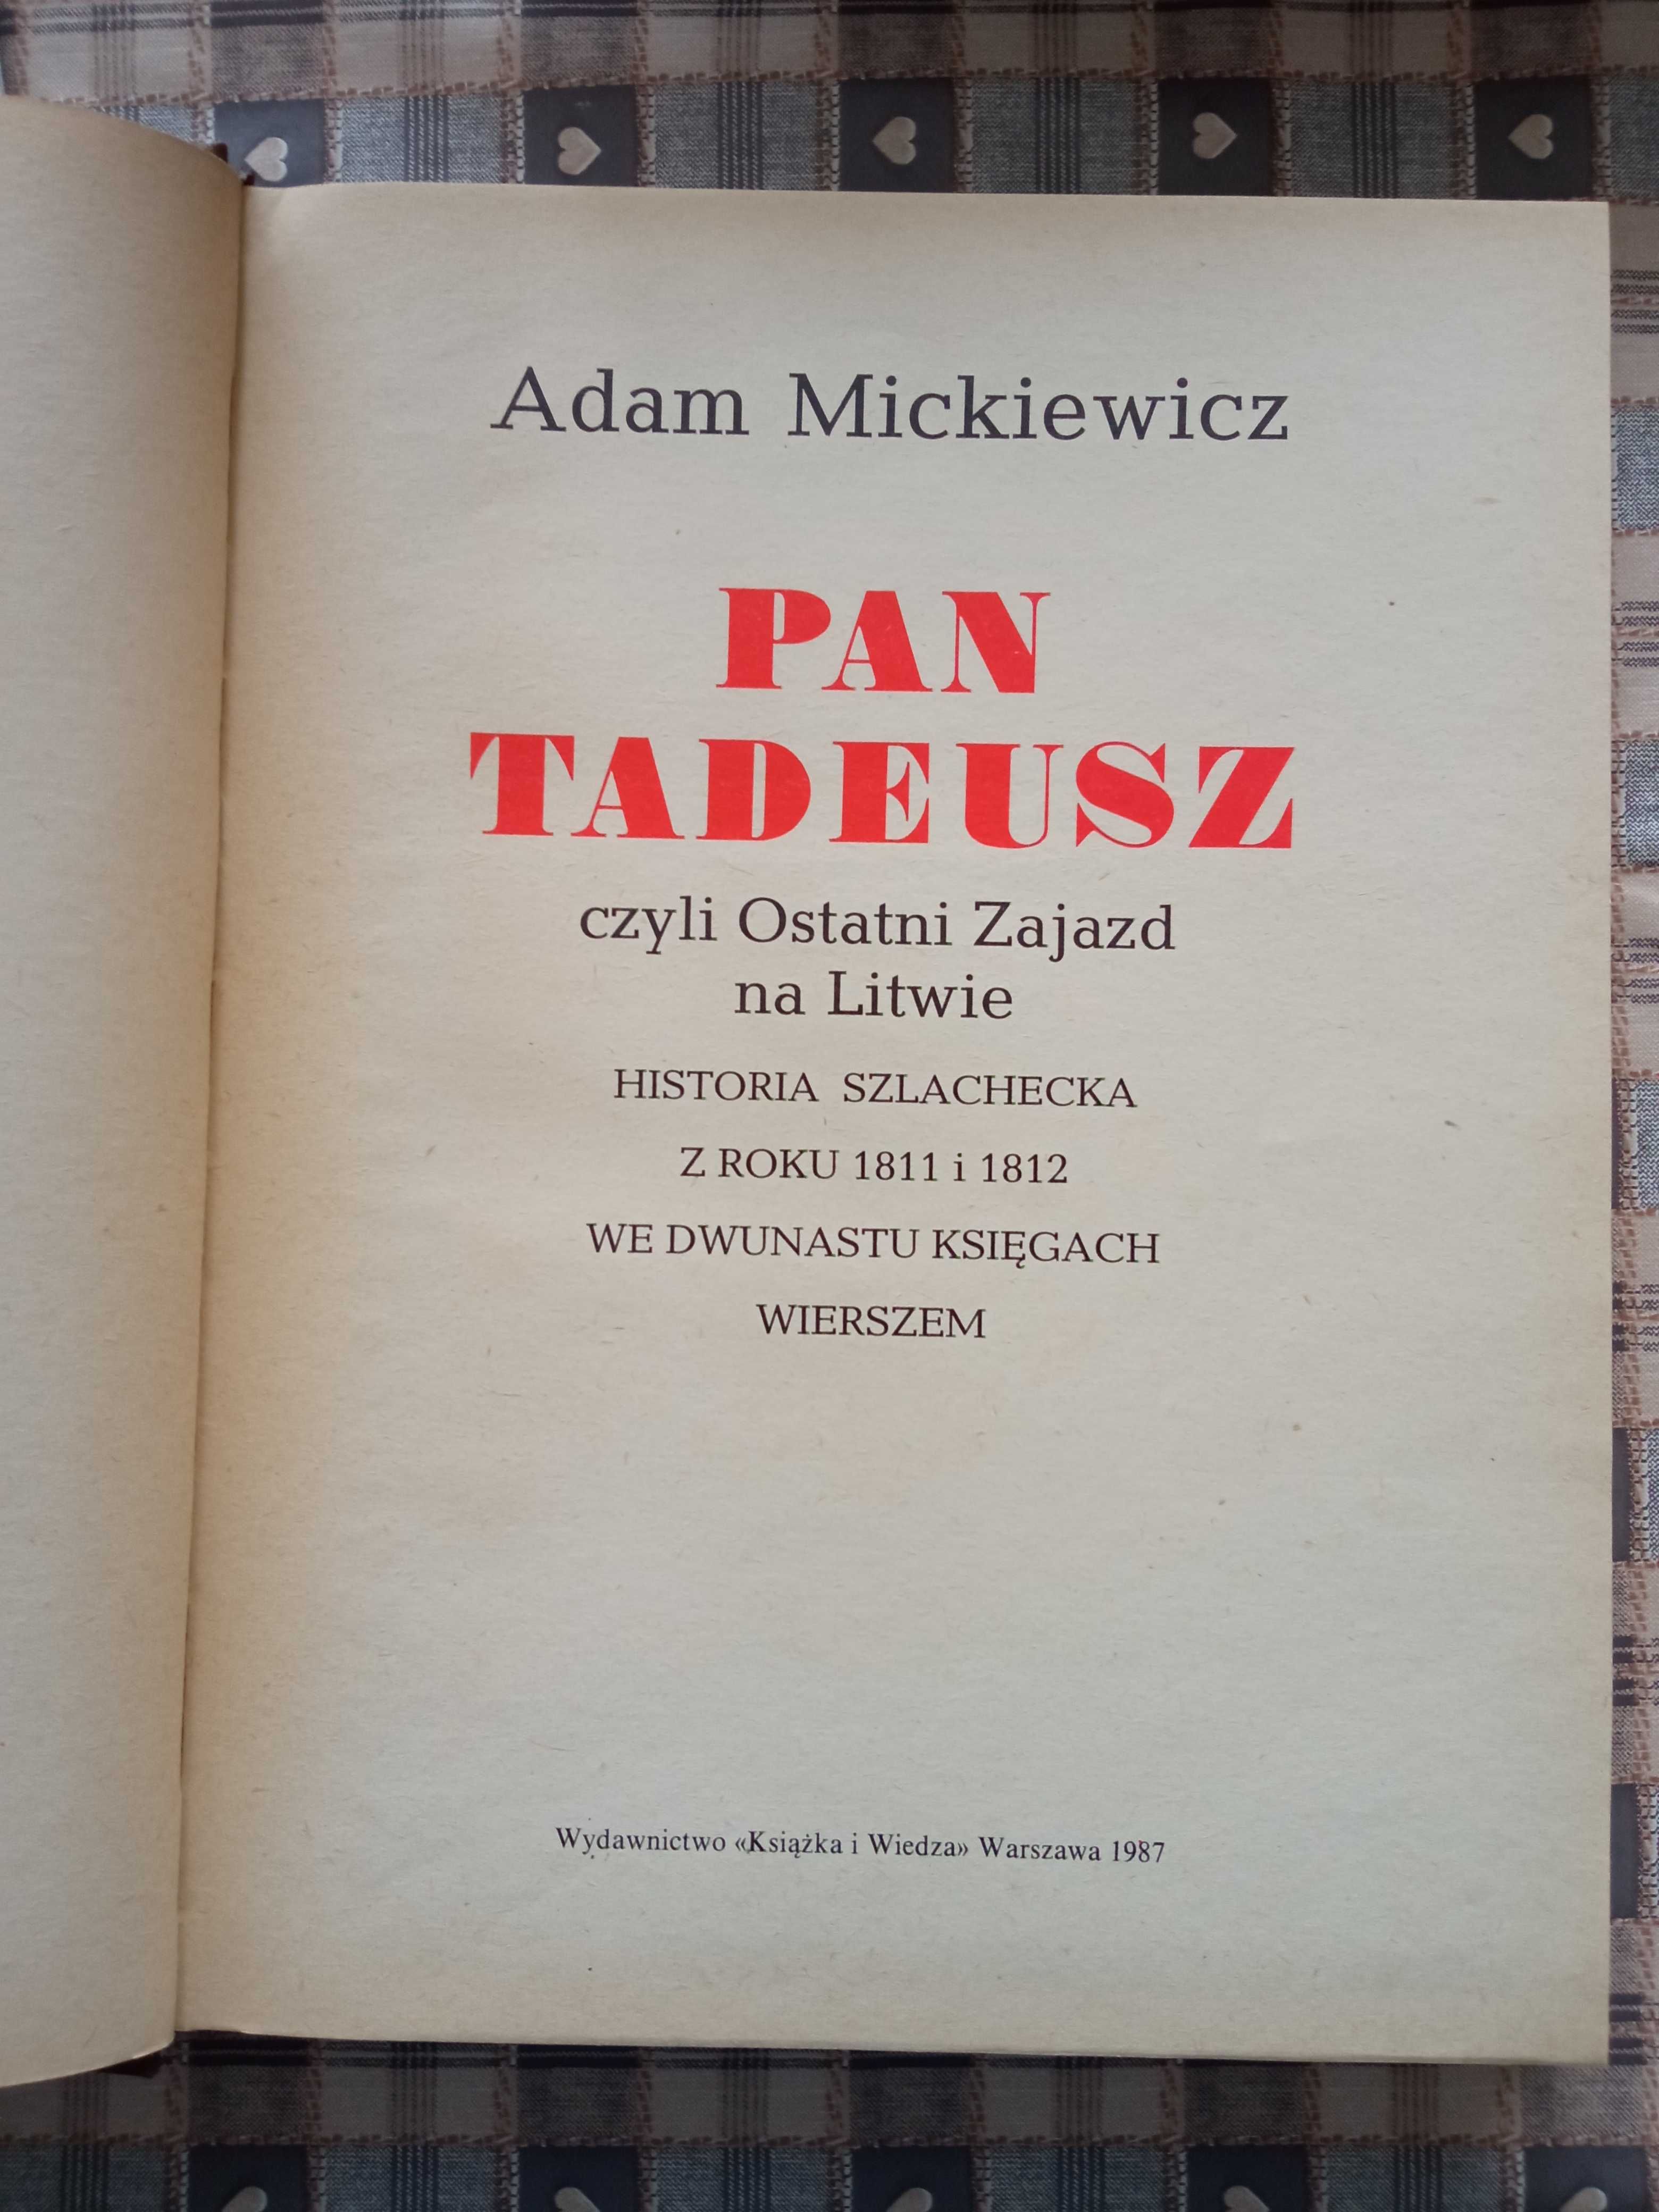 Pan Tadeusz- Adam Mickiewicz.